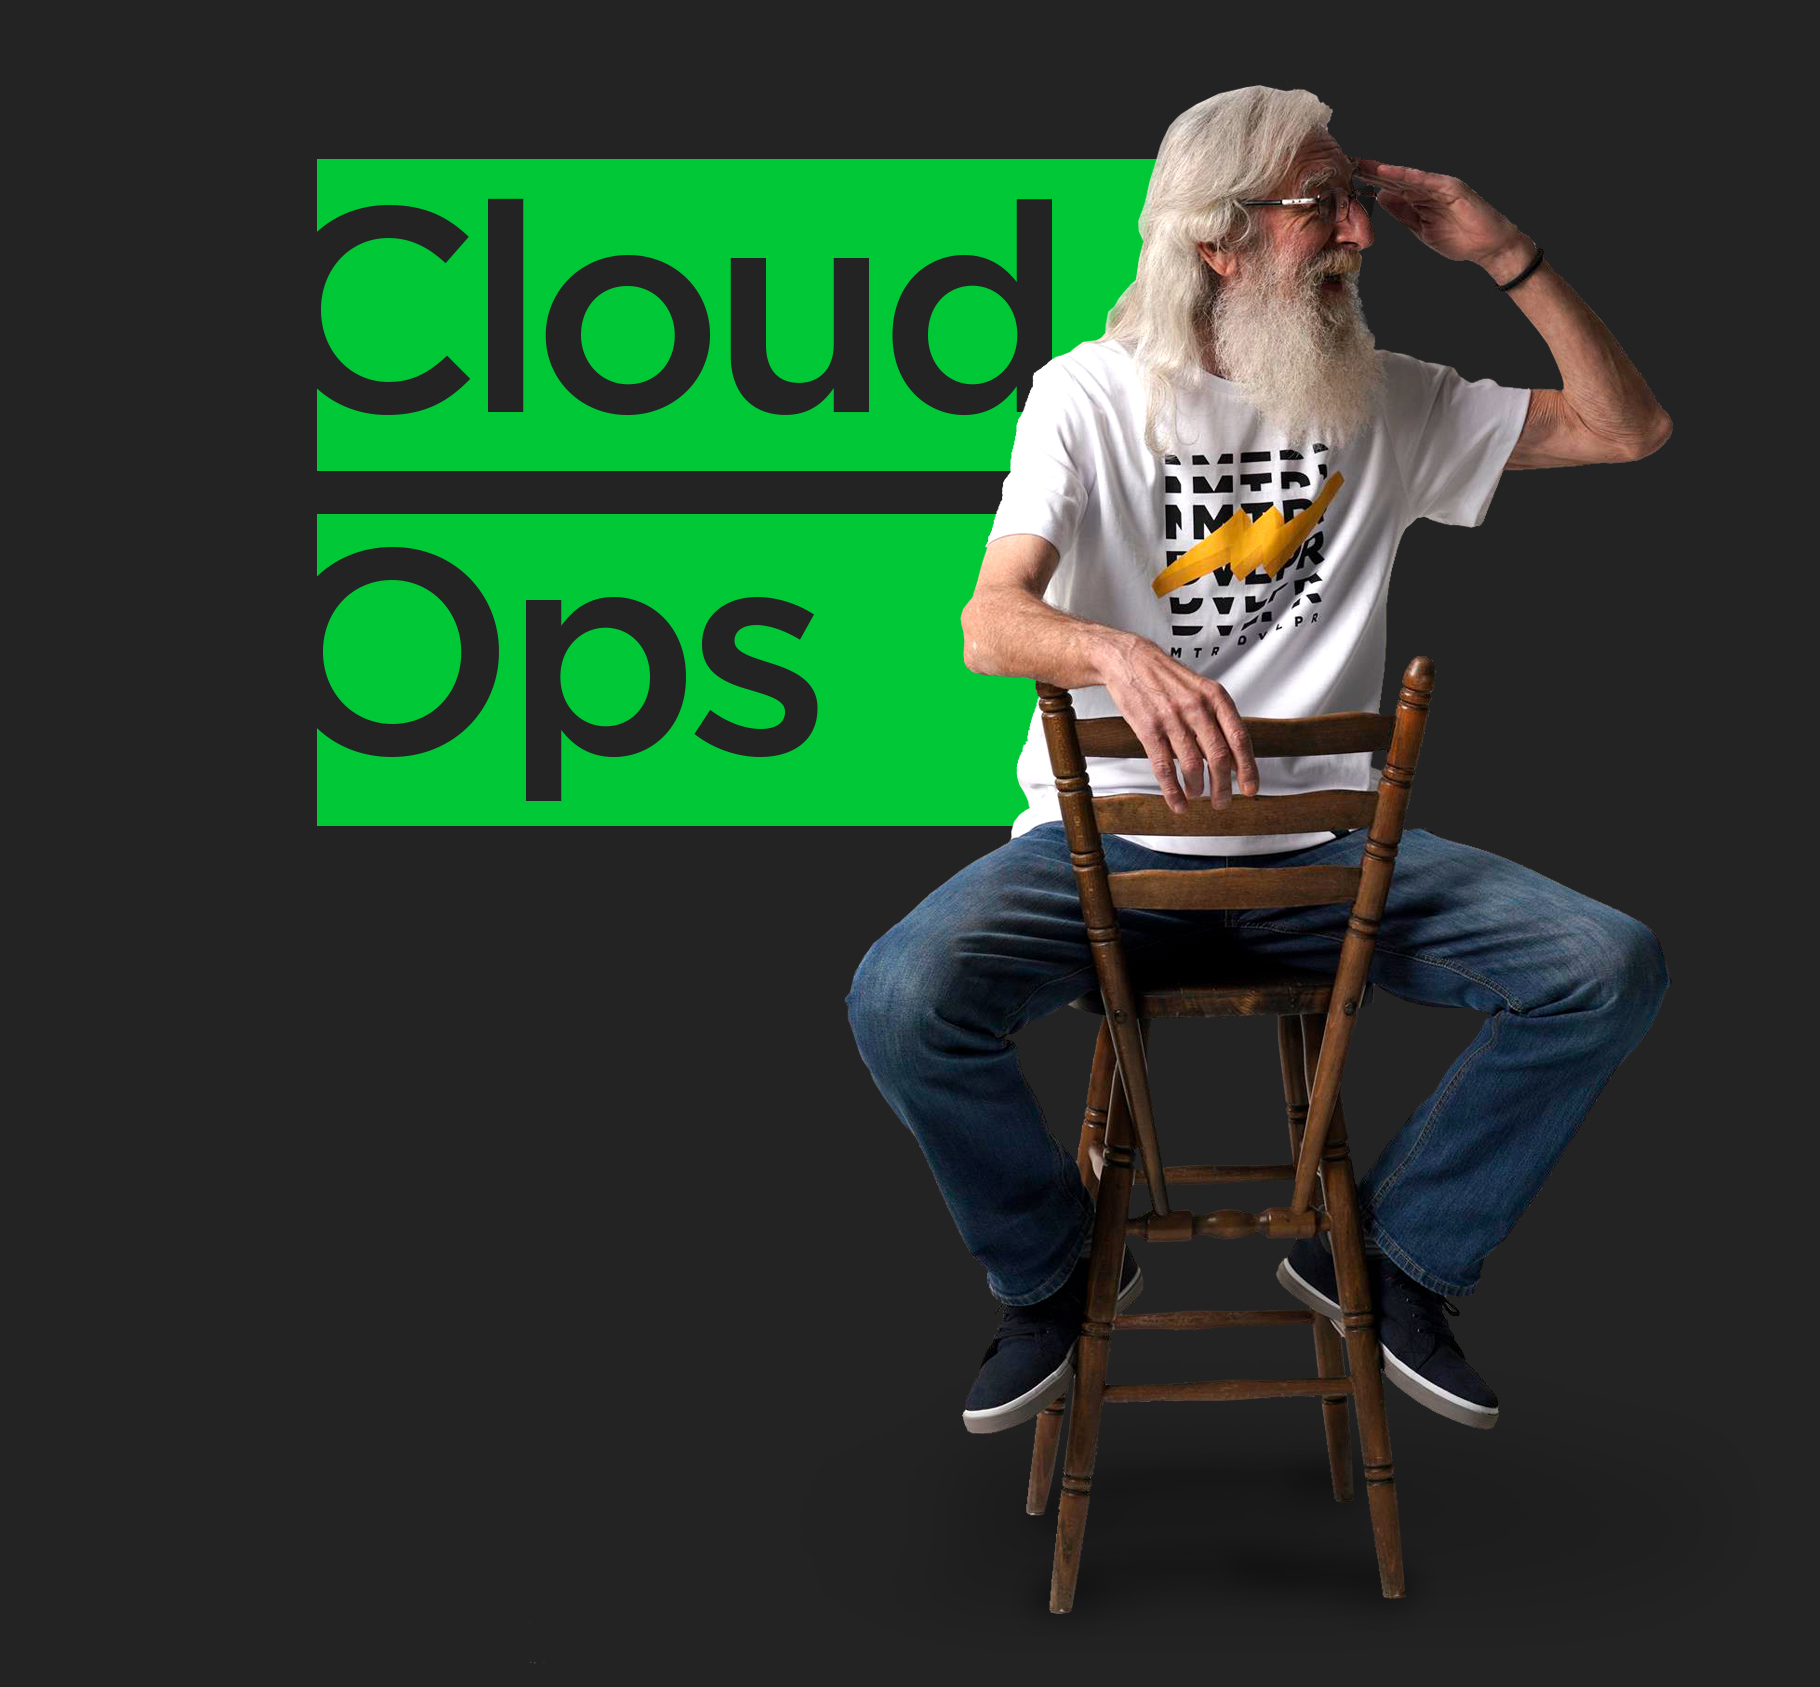 cloudops, Cloud Ops. Otvorene pozicije &#8211; Senior